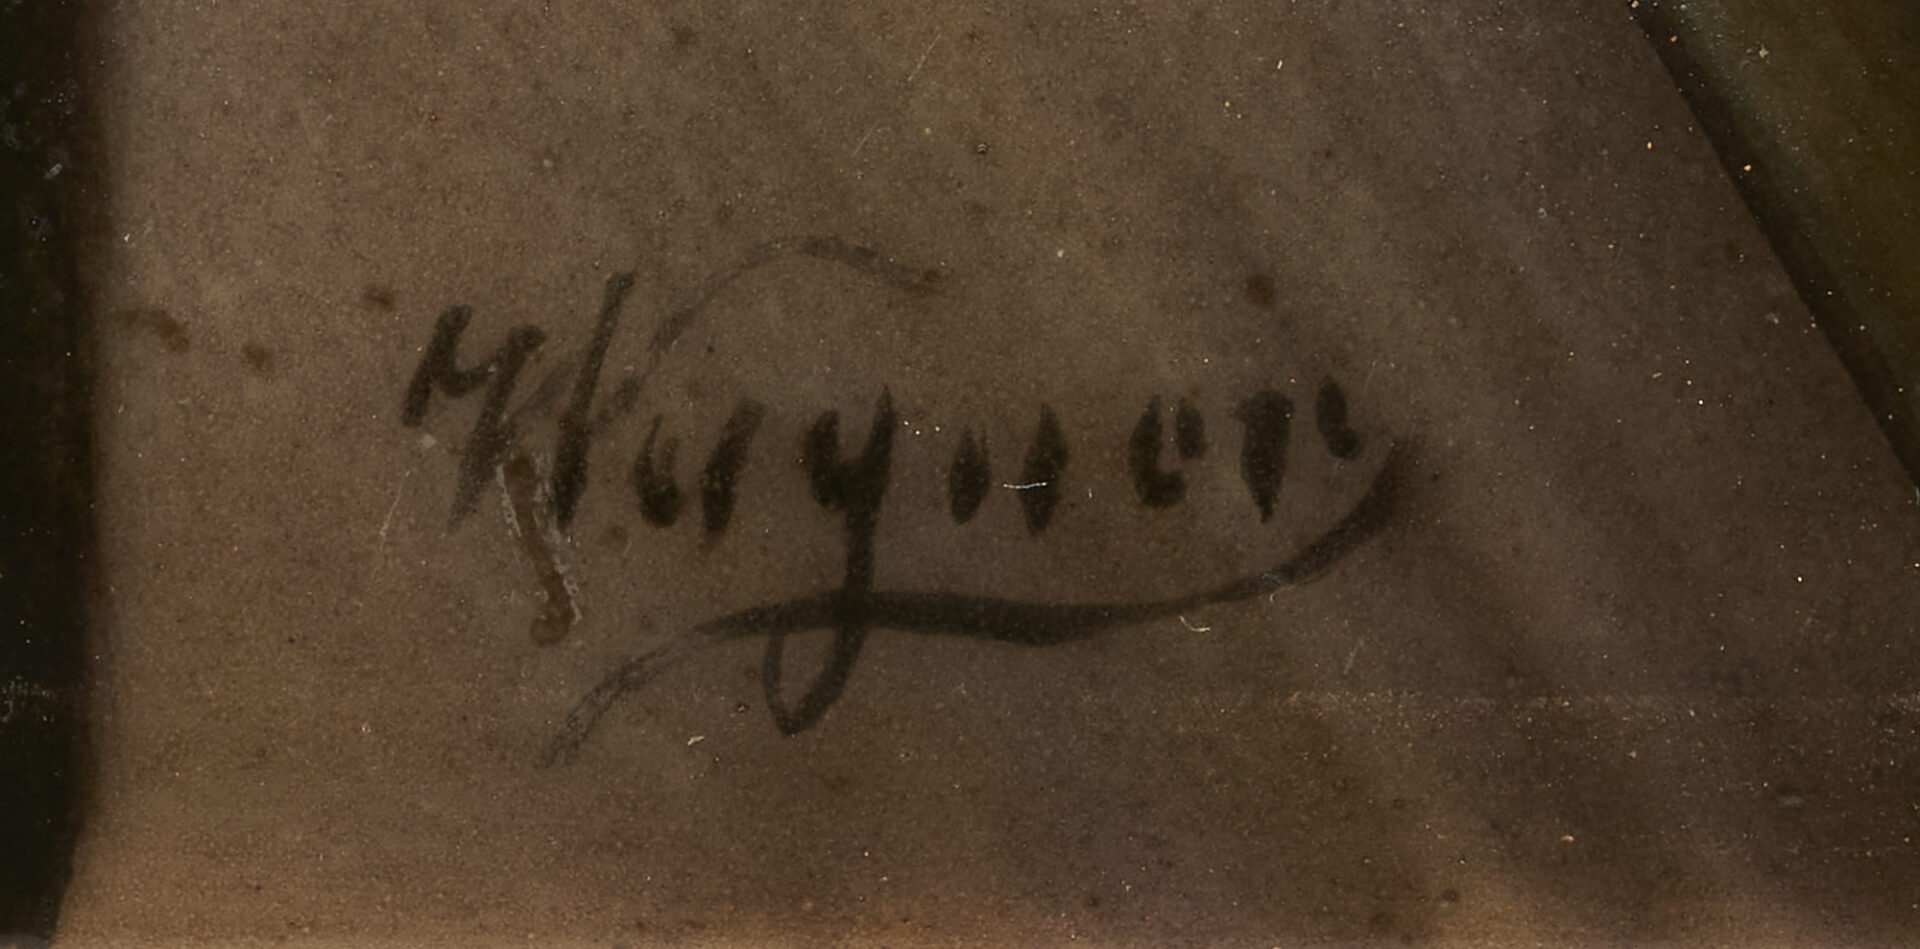 Lot 306: German Porcelain Plaque of Napoleon, Signed Wagner